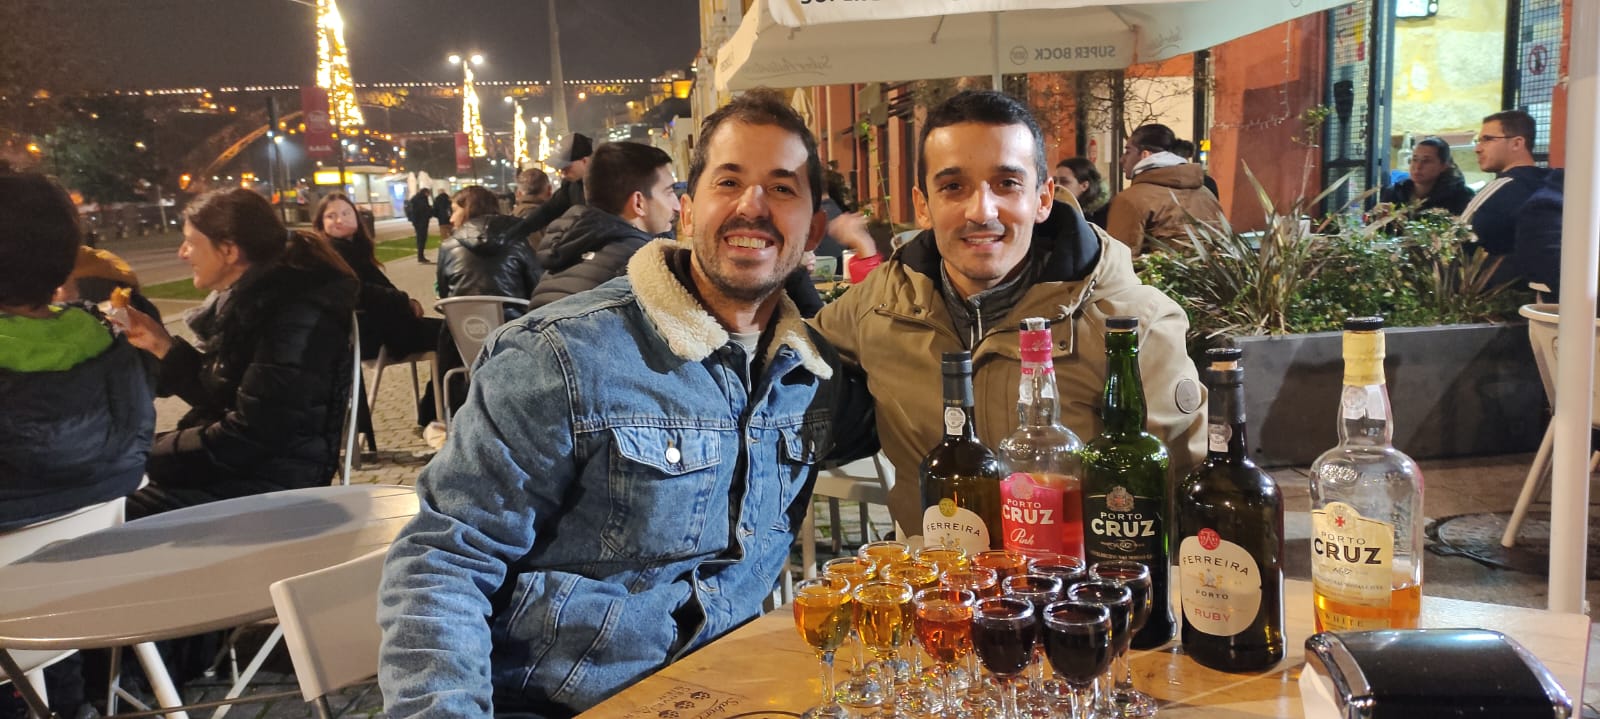 Qué ver y hacer en Oporto - Cata de vinos de Oporto